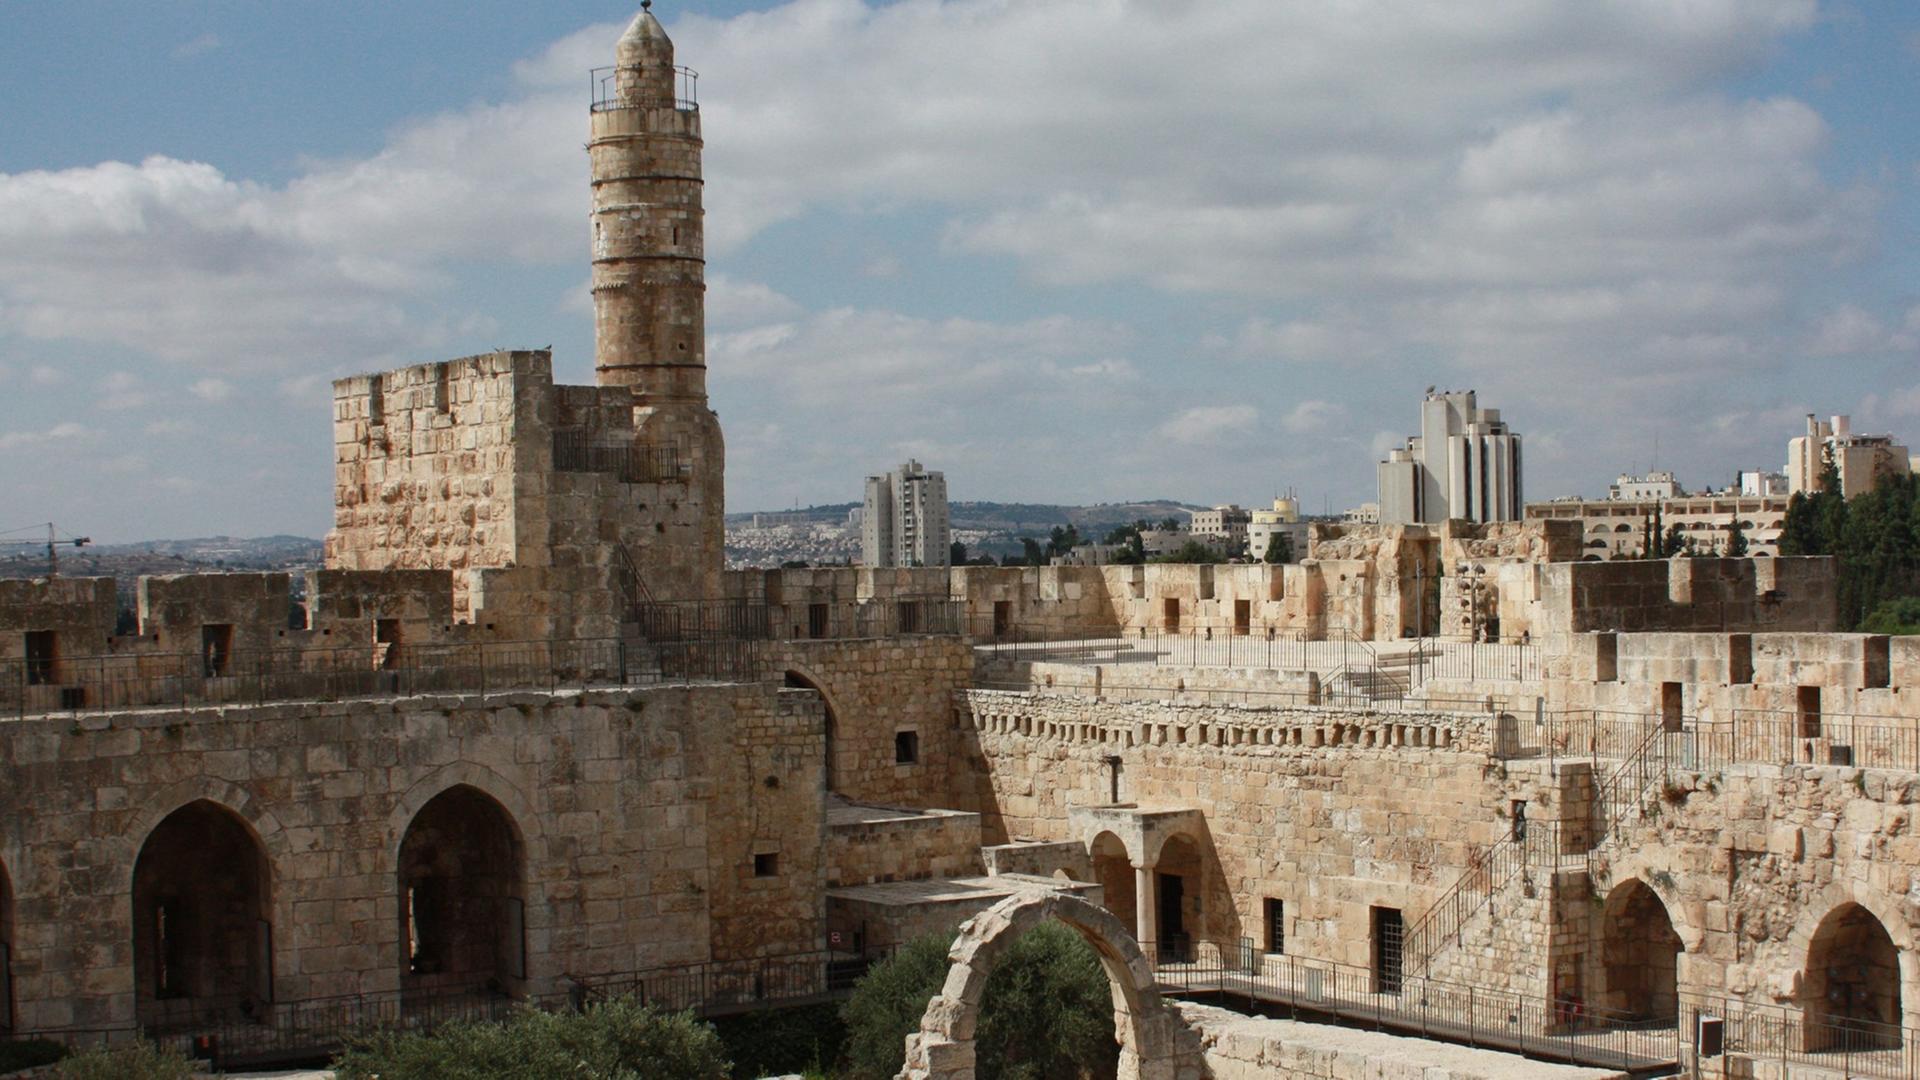 Davidszitadelle, Kultur in Zeiten des Krieges - Jerusalem lädt zum größten Architekturevent